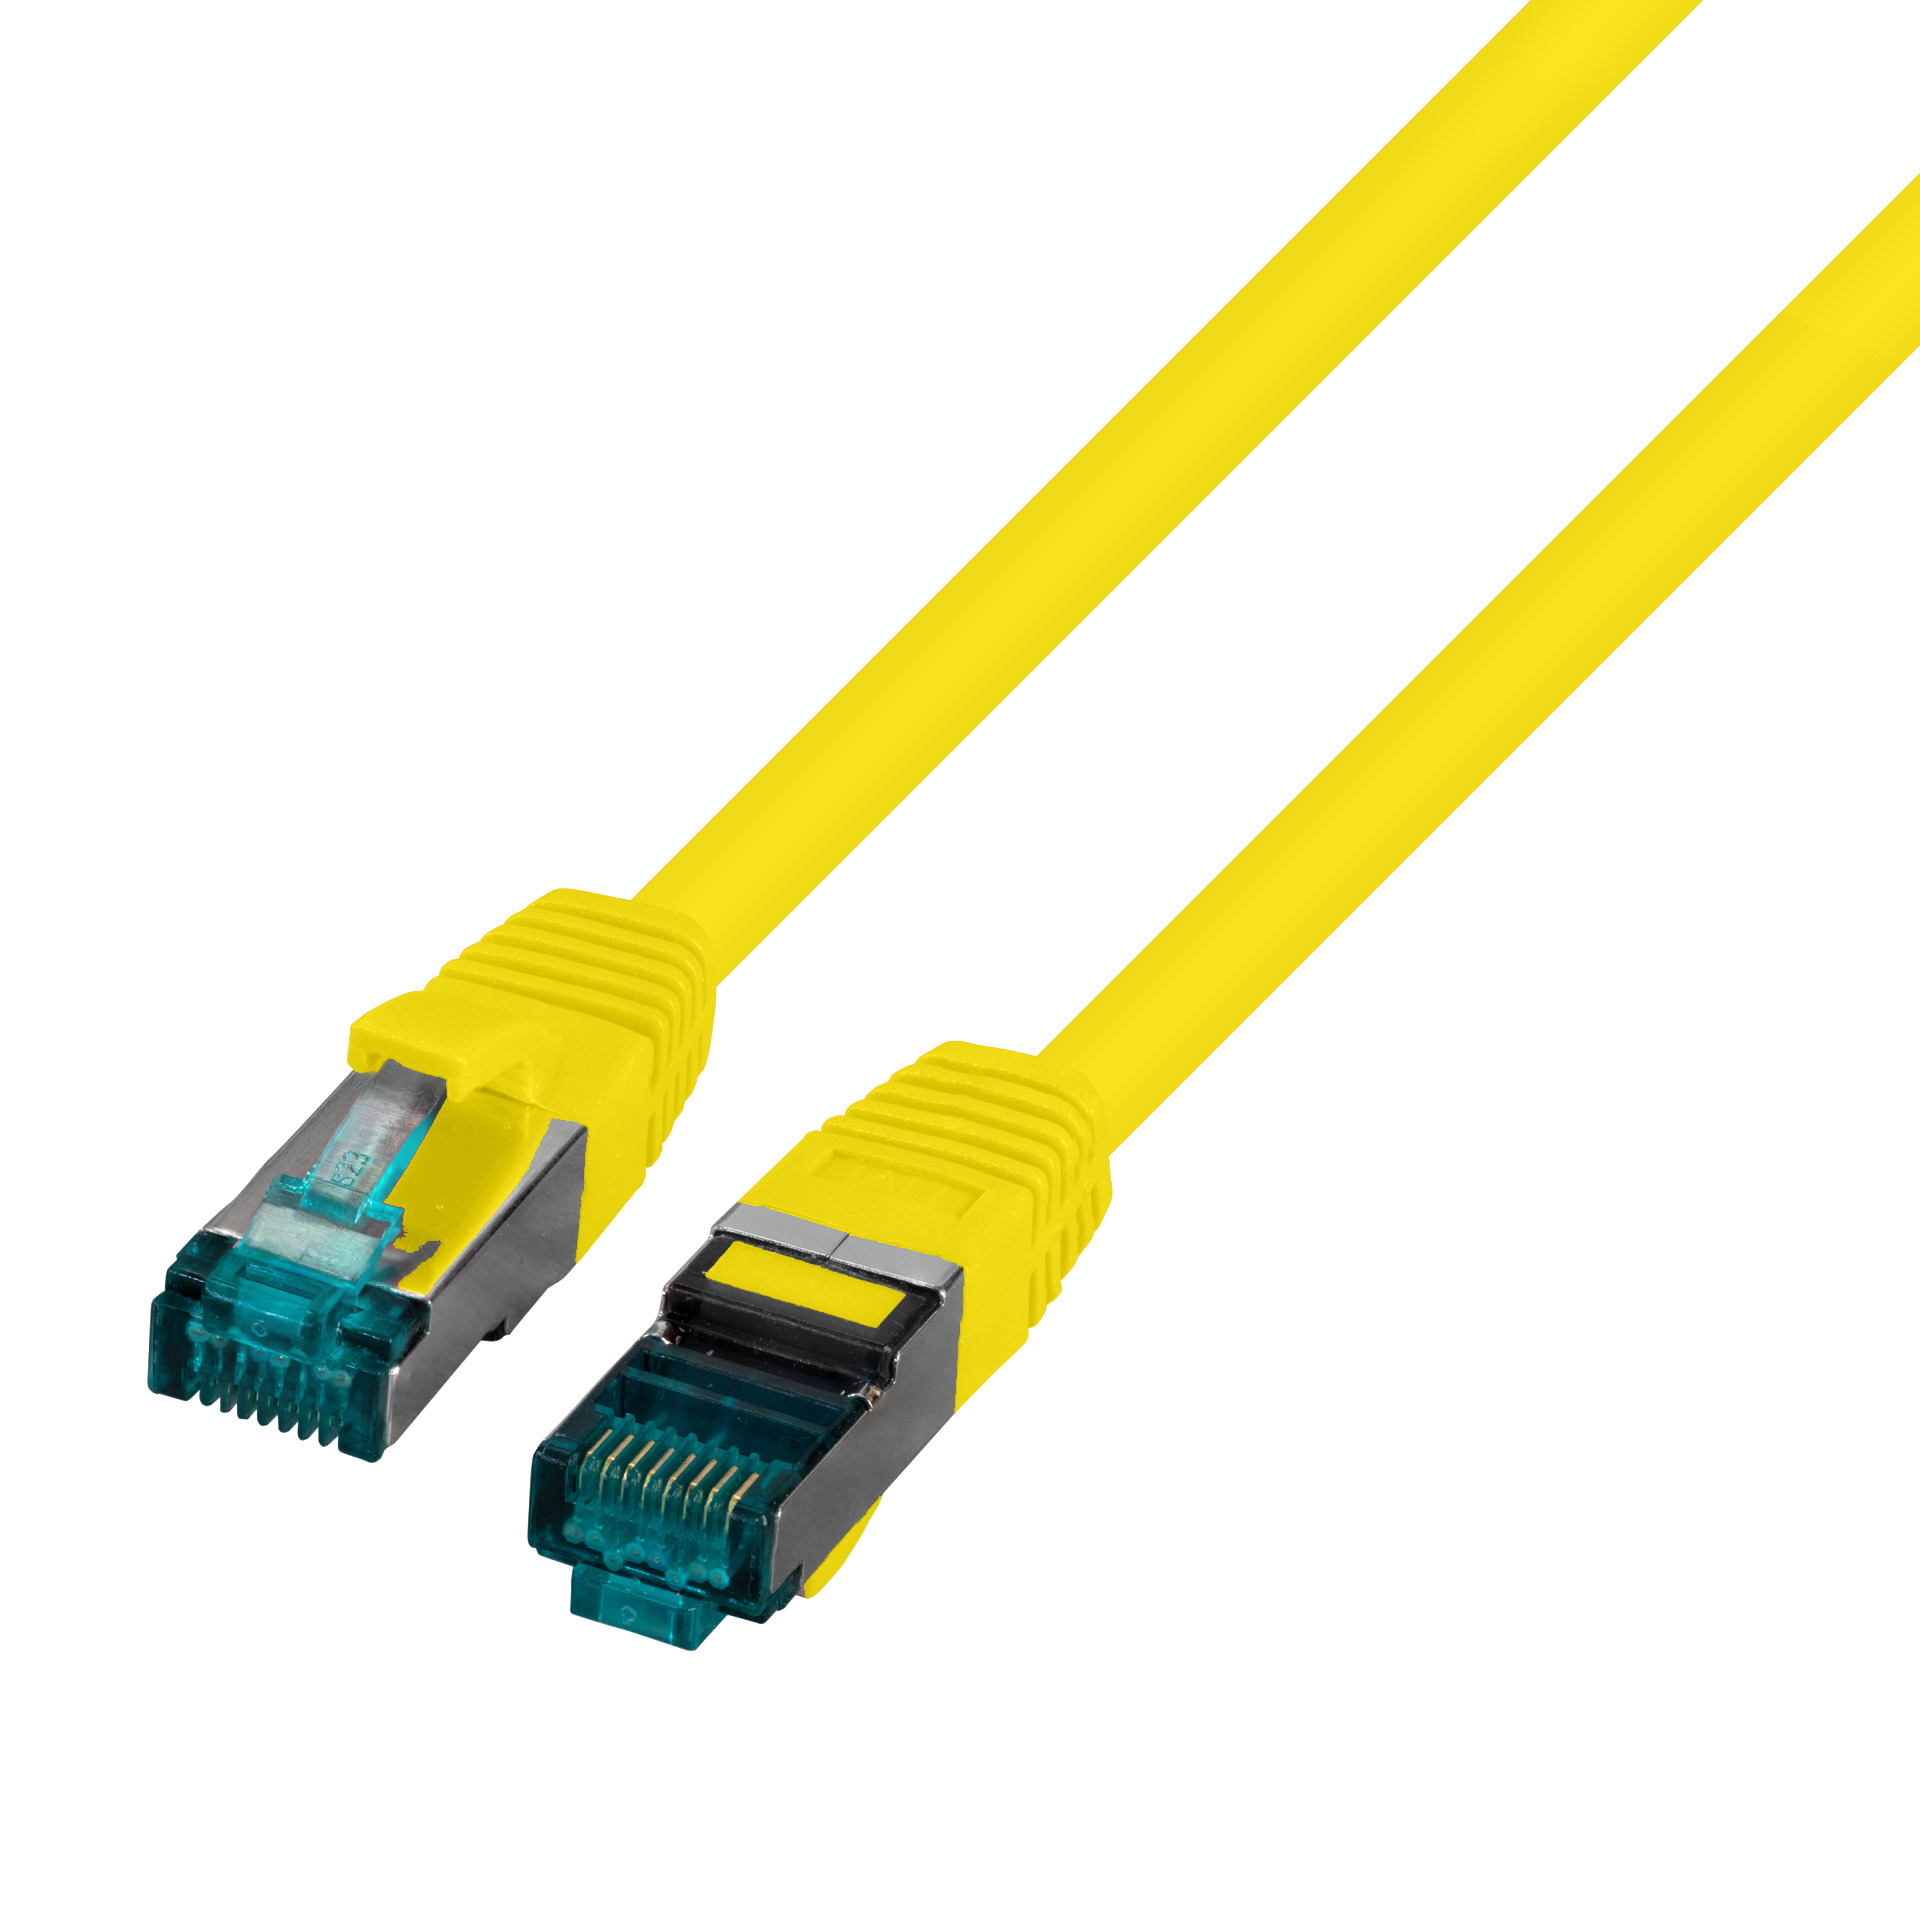 RJ45 Patch cable S/FTP, Cat.6A, LSZH, 1m, yellow